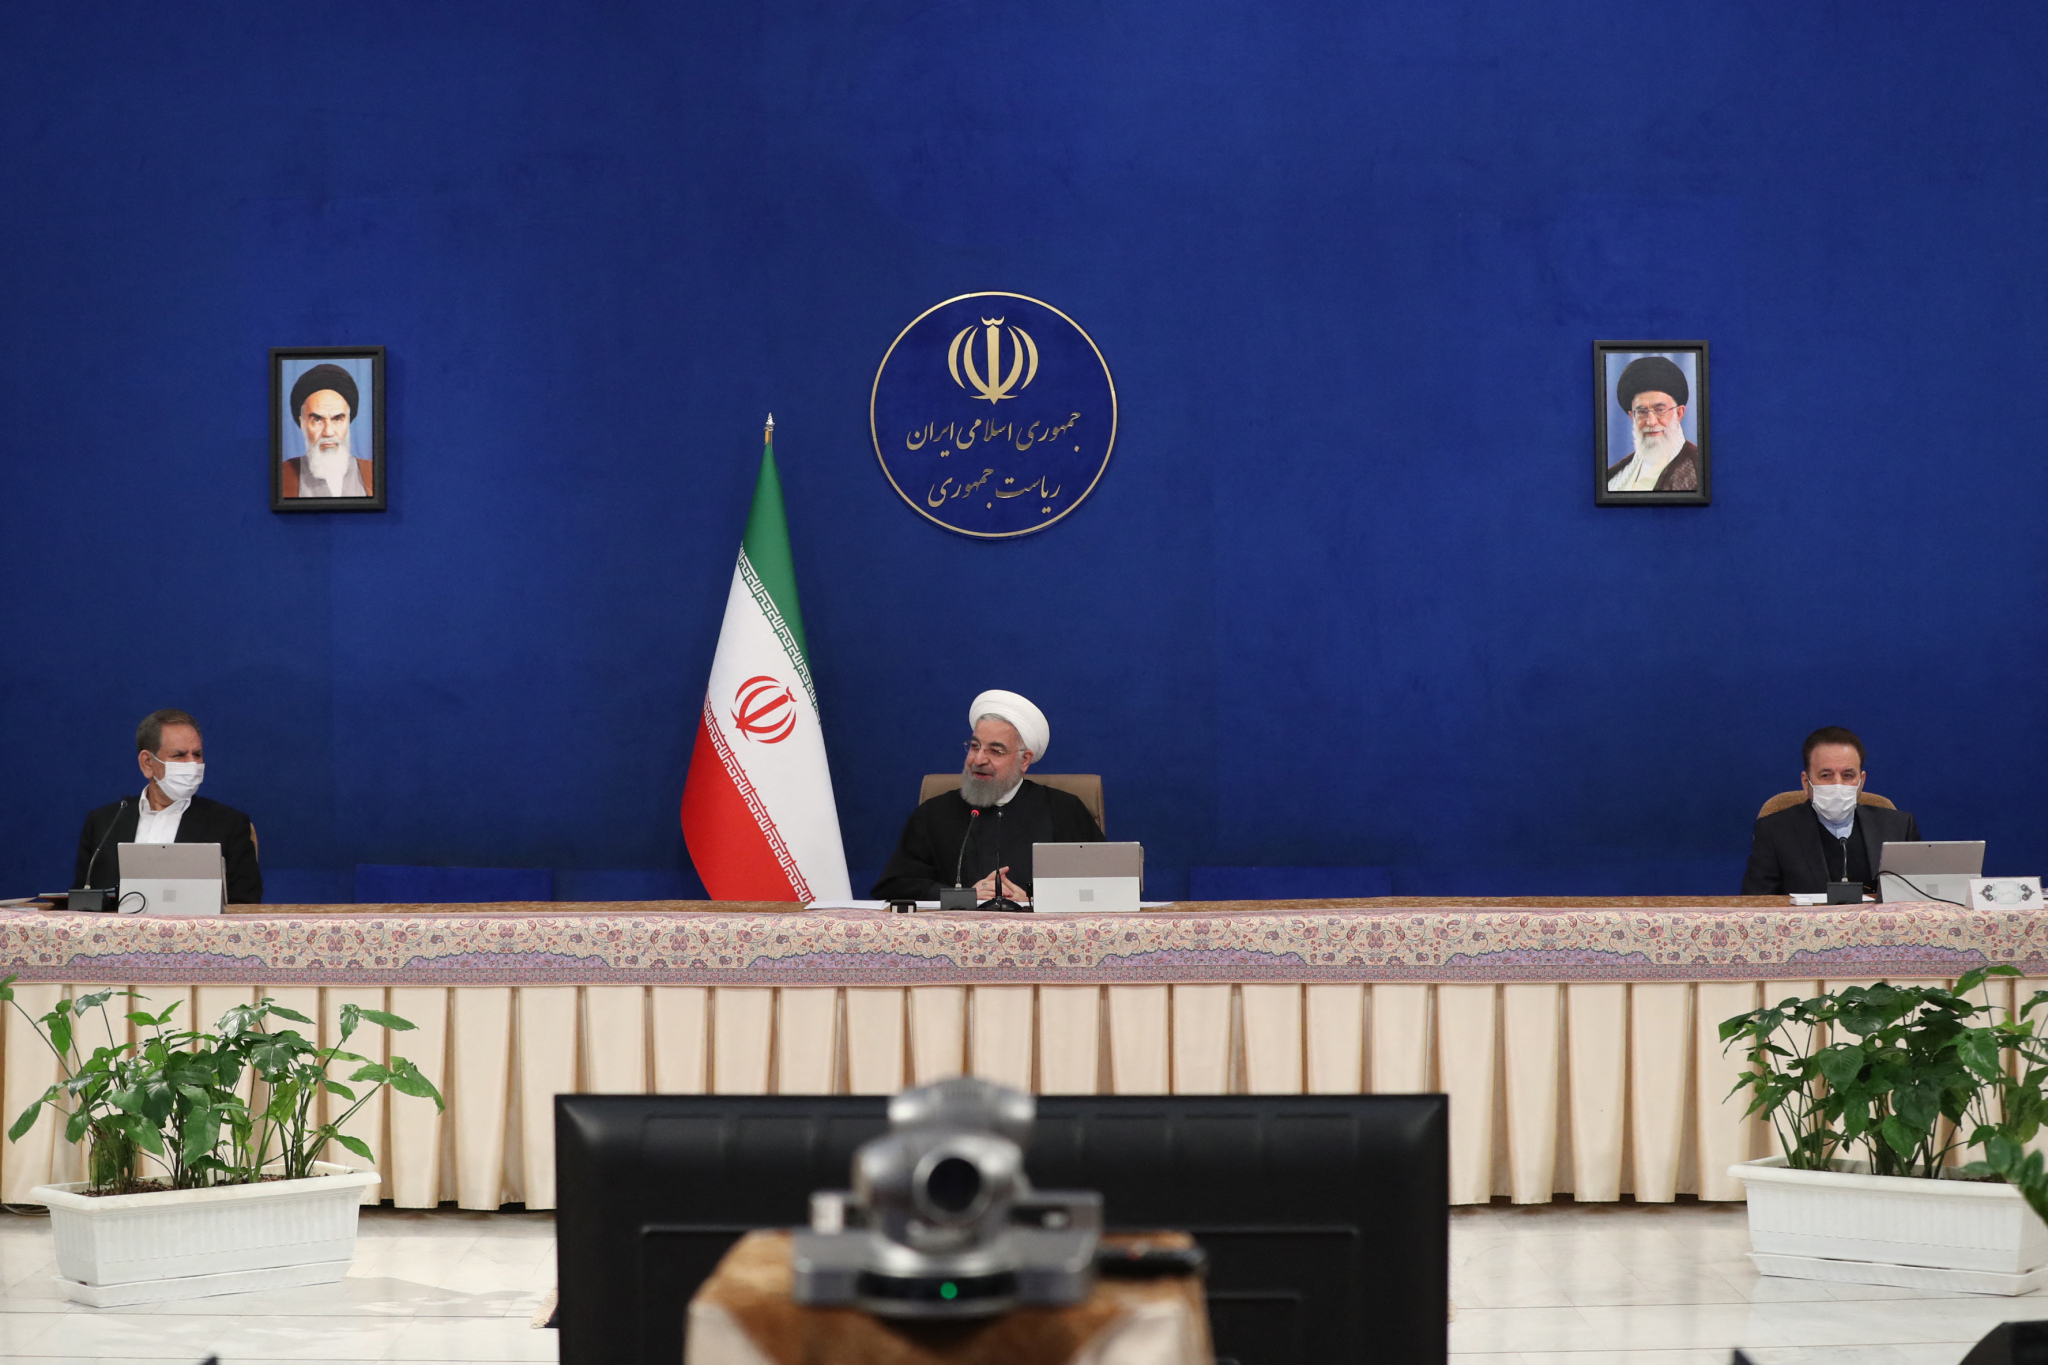 伊朗与中国达成5个领域全面合作白宫坐不住紧急发声